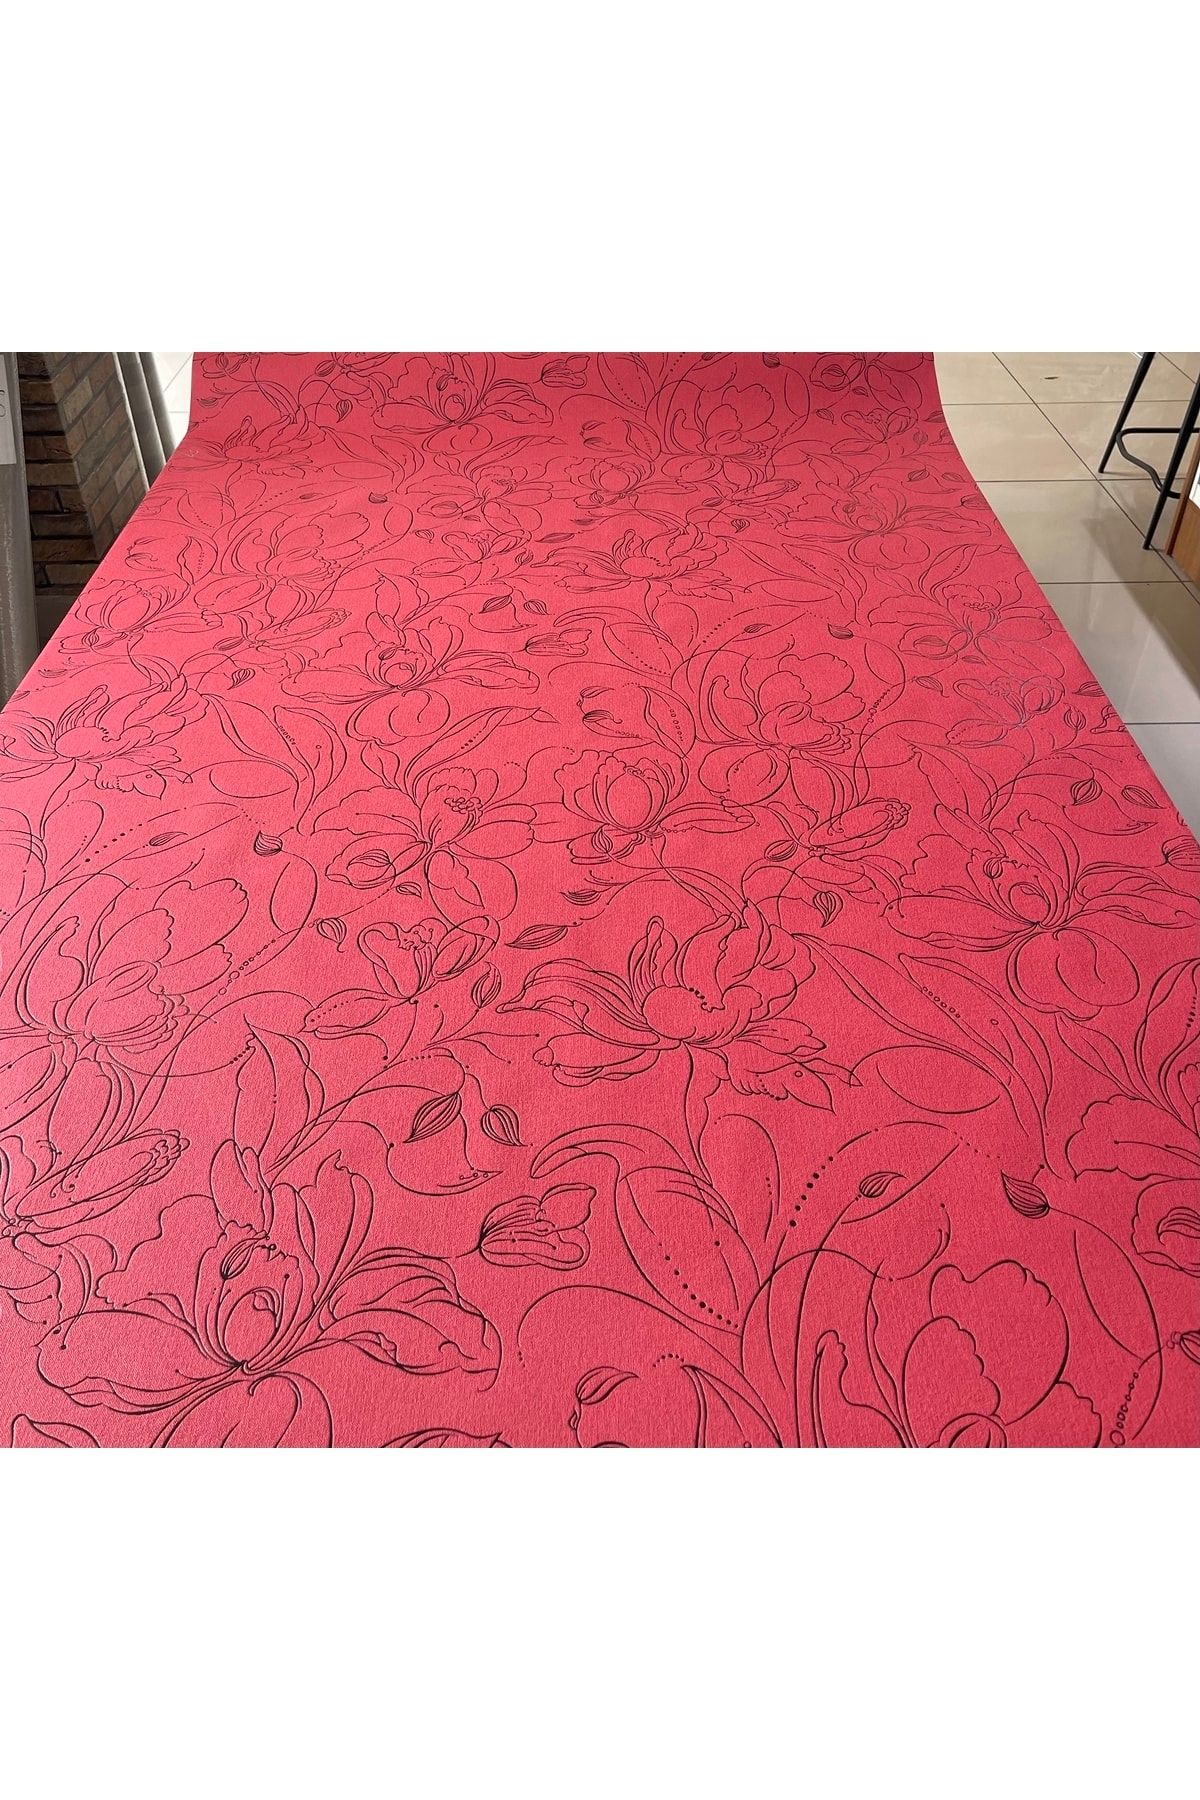 BAŞYAPI DİZAYN Kırmızı Zemin Üzeri Siyah Çiçek Desenli Ithal Duvar Kağıdı (10m²)